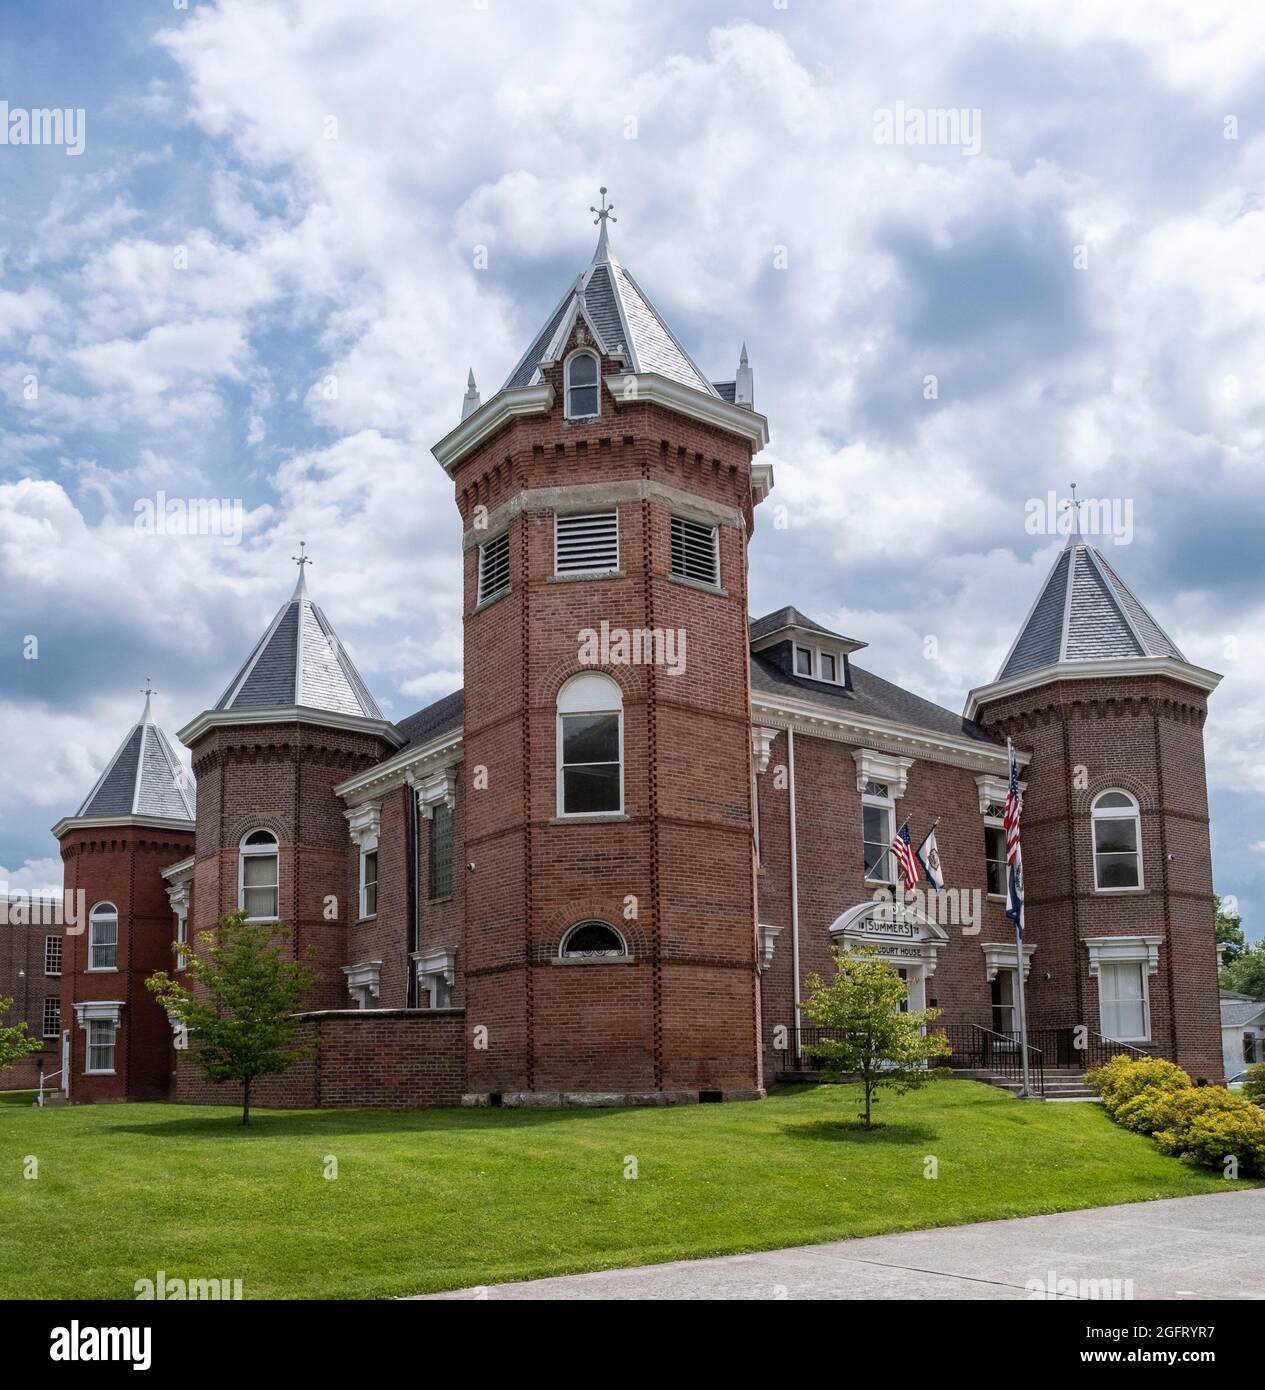 Hinton, West Virginia. Sommers County Court House. Spätromanisches Revival-viktorianischer Architekturstil, erbaut 1875-76, umgebaut 1893, 1898. Stockfoto